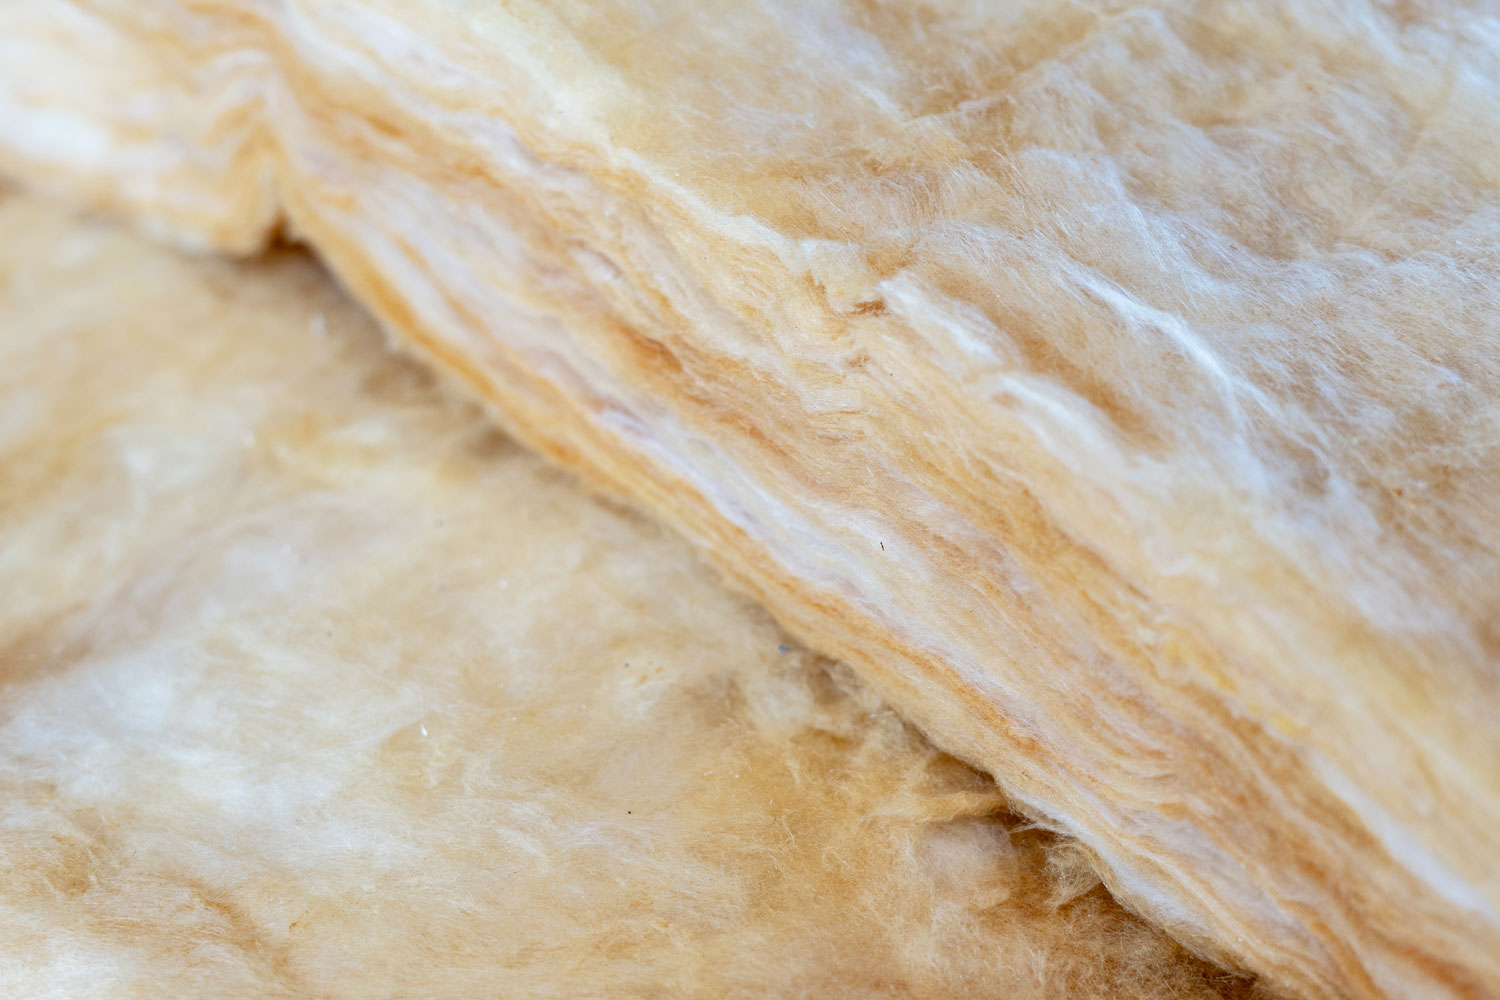 A thick sheet of batt insulation